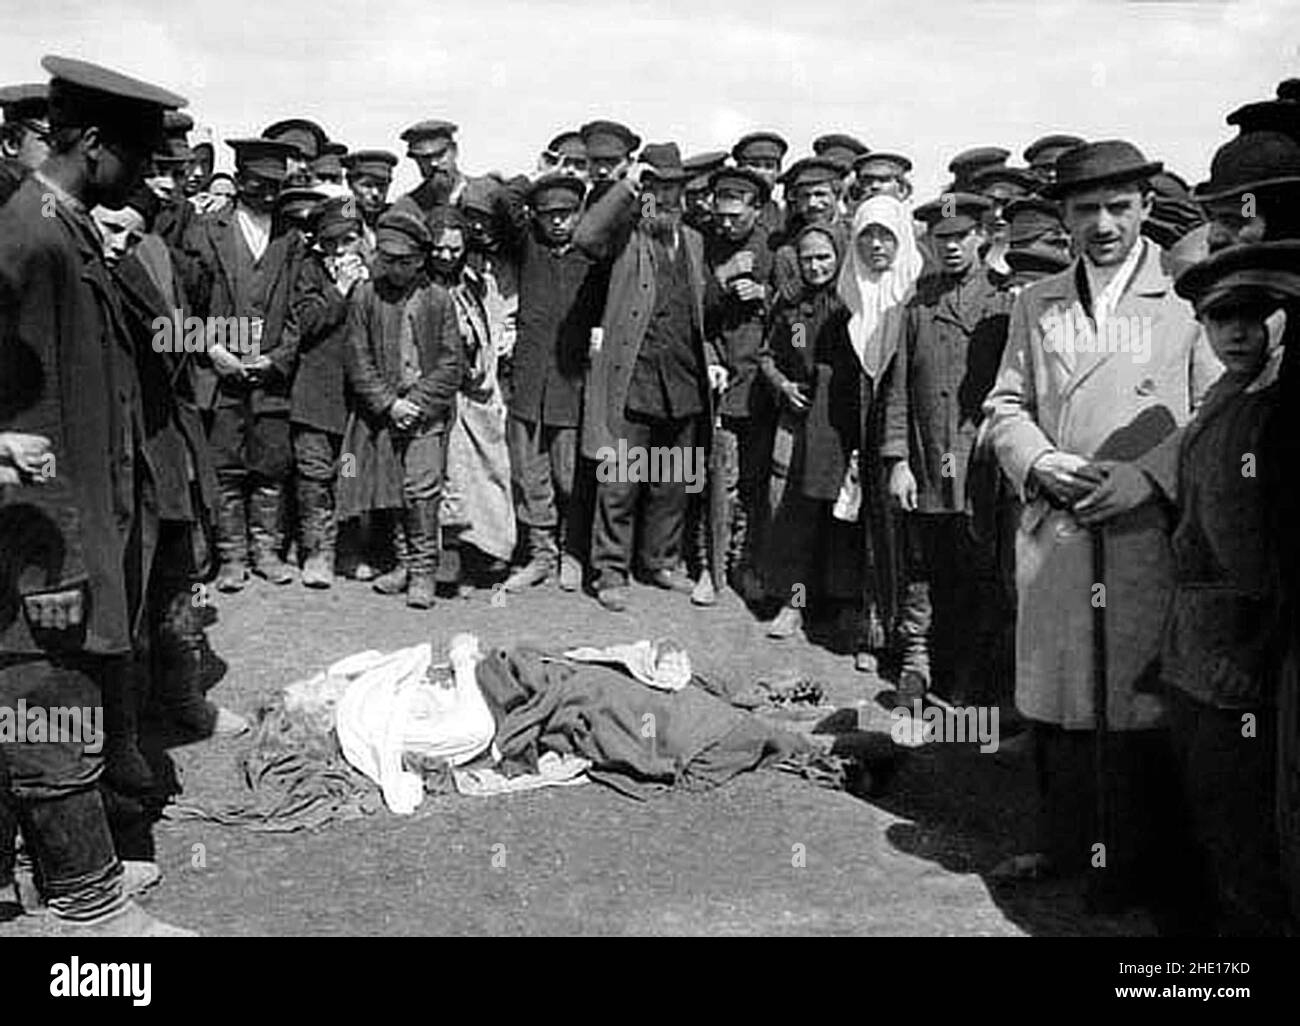 Corpi schiacciati a terra dopo la tragedia di Khodynka - un baluardo tra la folla sul campo di Khodynka durante l'incoronazione di Tsar Nicholas II uccise intorno al 1300 e lasciò molti altri feriti. Foto Stock